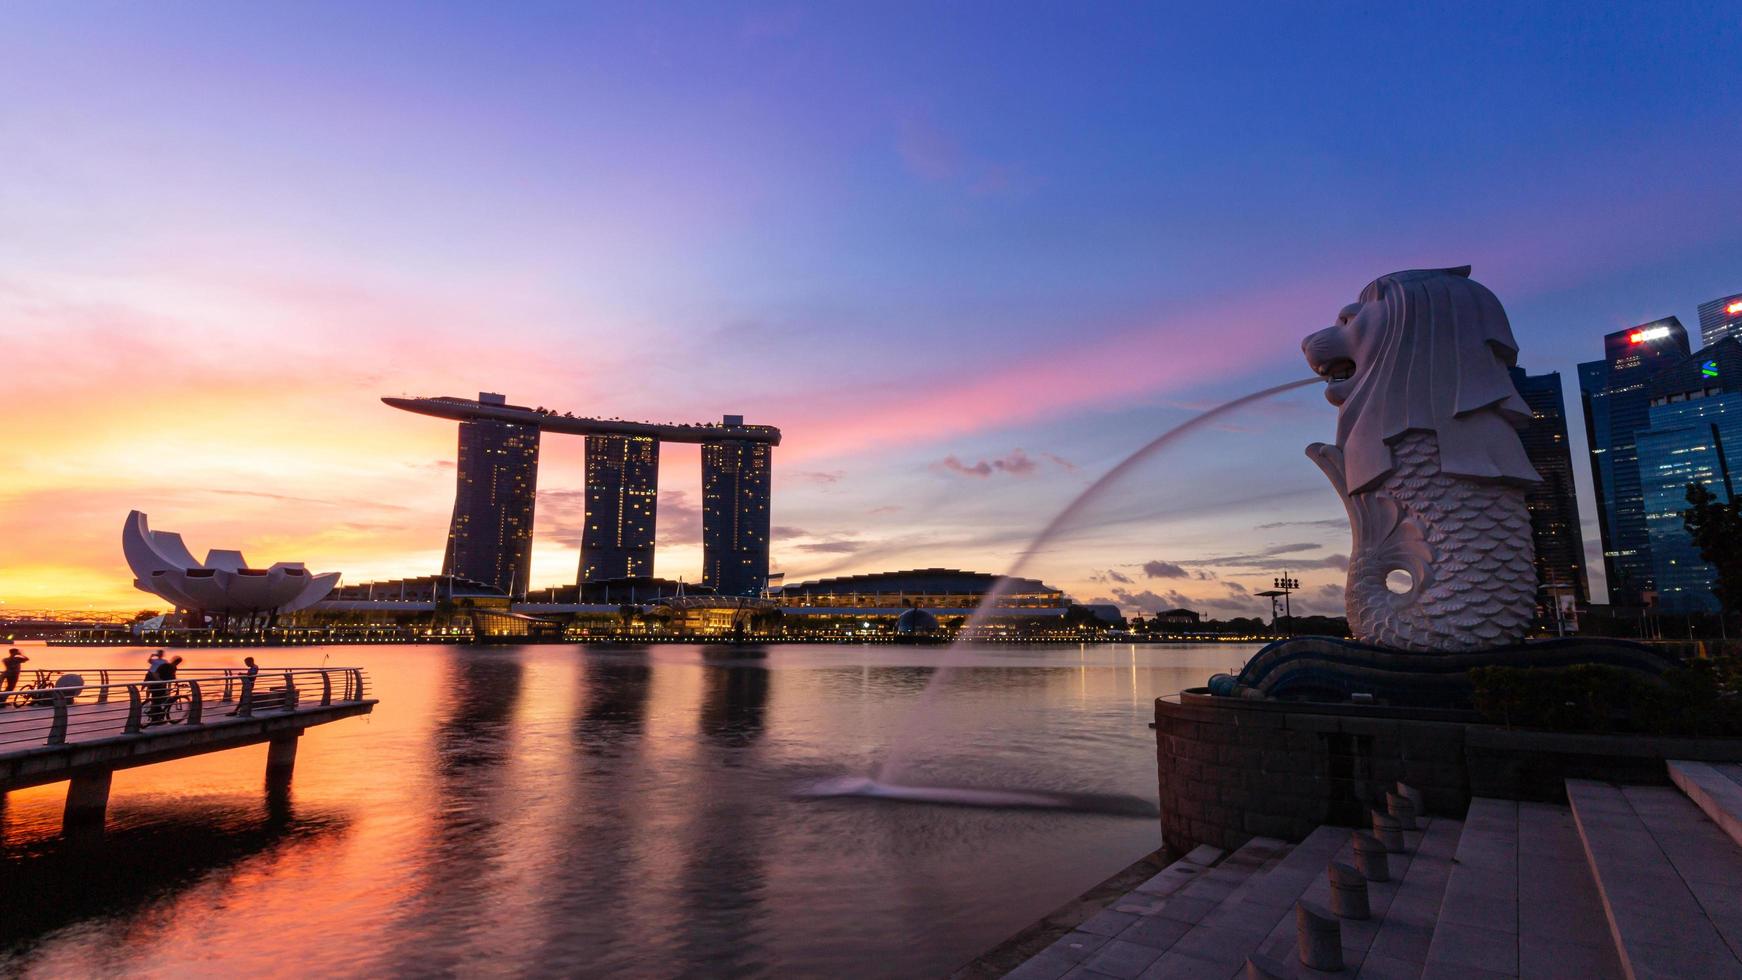 marina bay, singapur 15 de octubre de 2022 merlion y marina bay sands con el crepúsculo de la mañana. edificio icónico alrededor de marina bay. foto